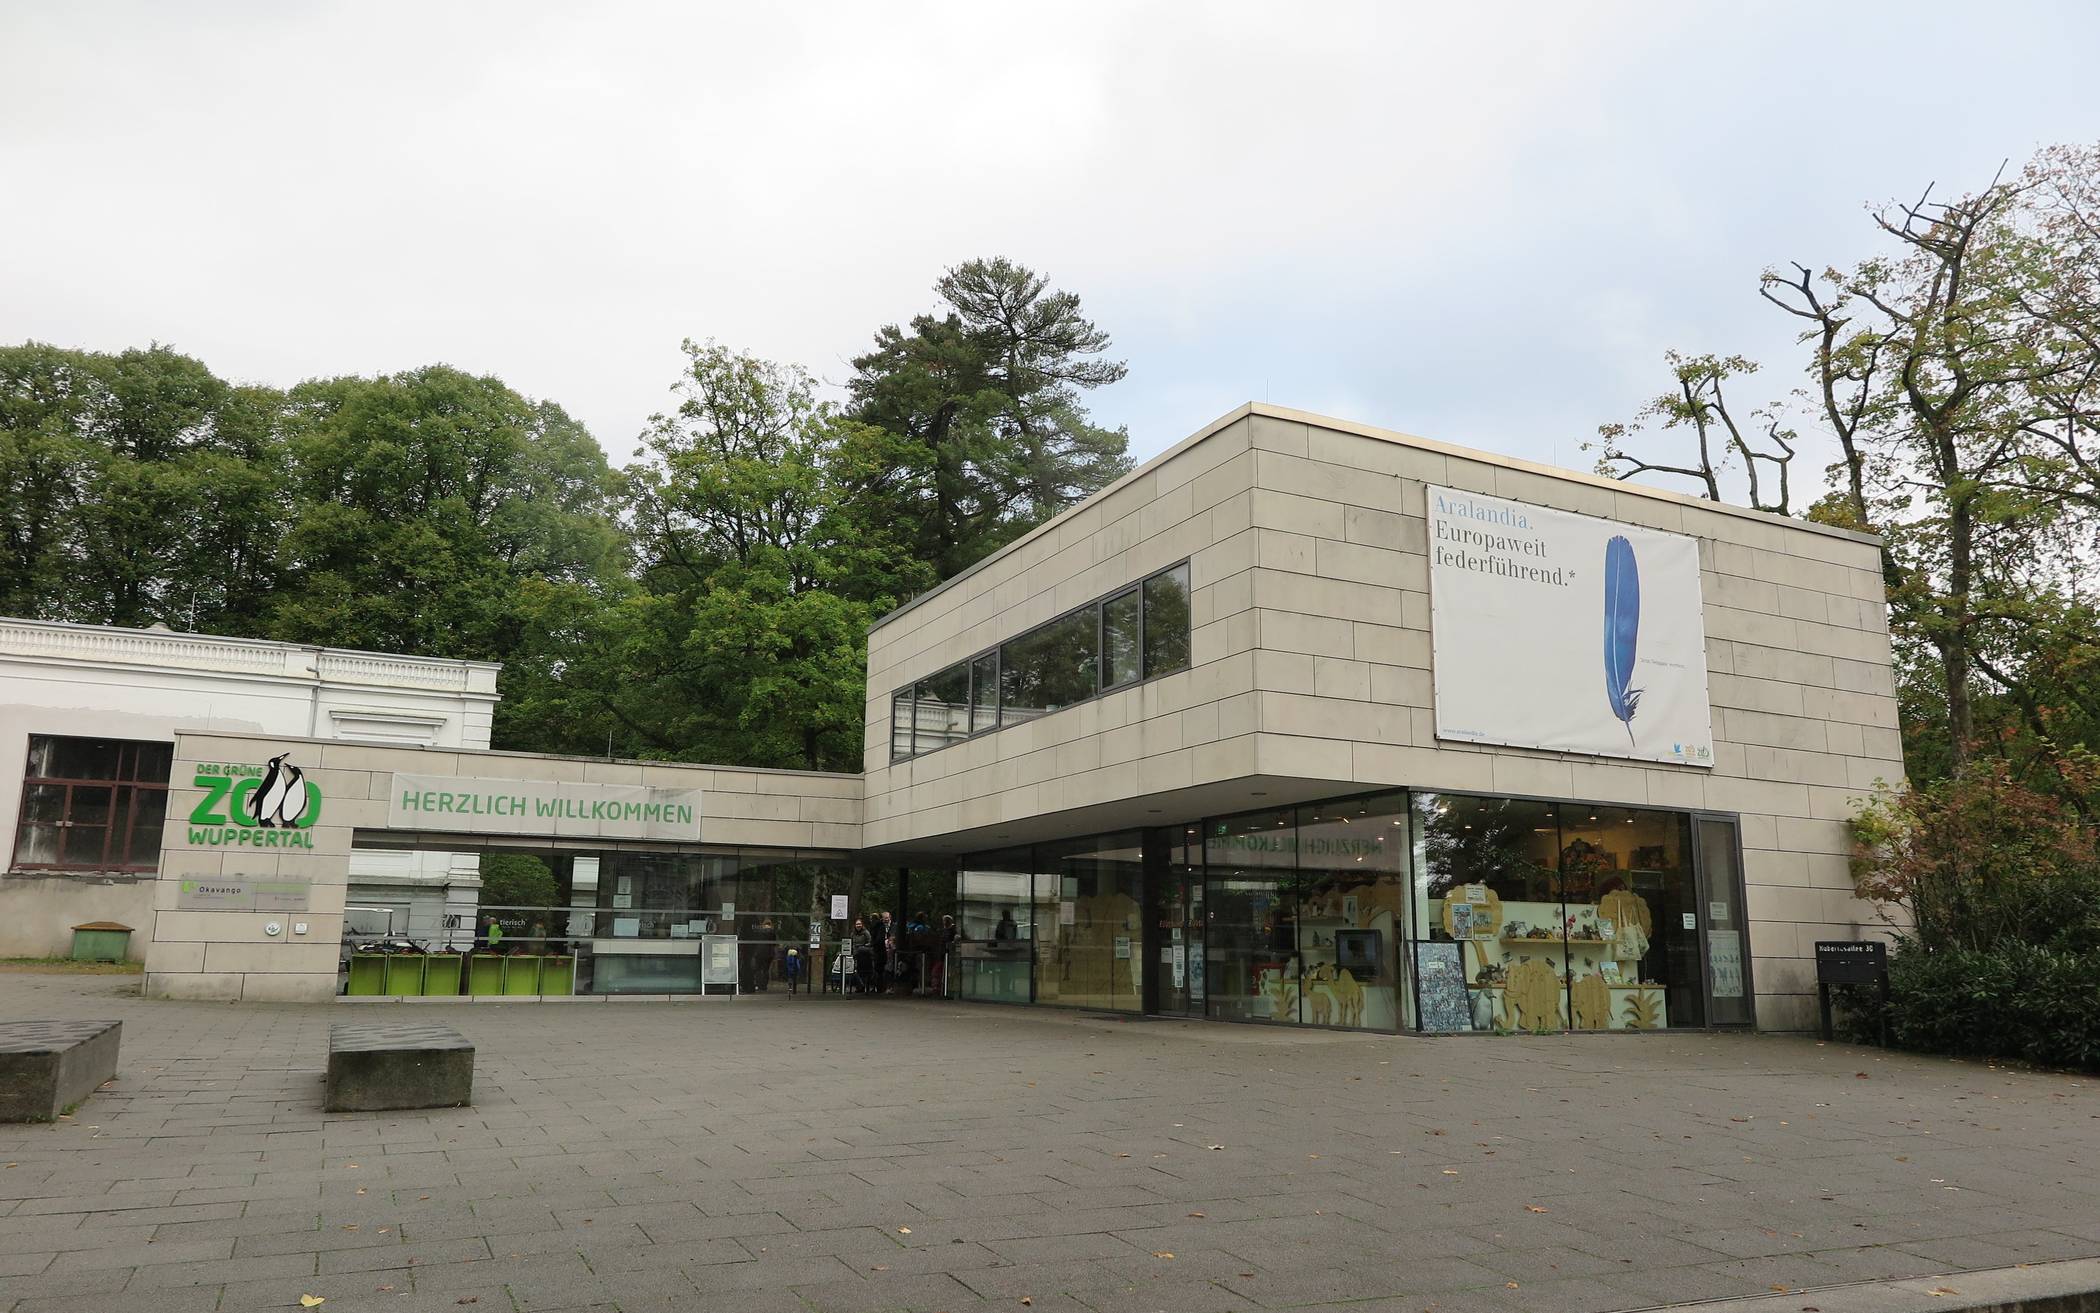  Weiterhin gilt für einen Besuch im Grünen Zoo Wuppertal die sogenannte 2G-Regel. 